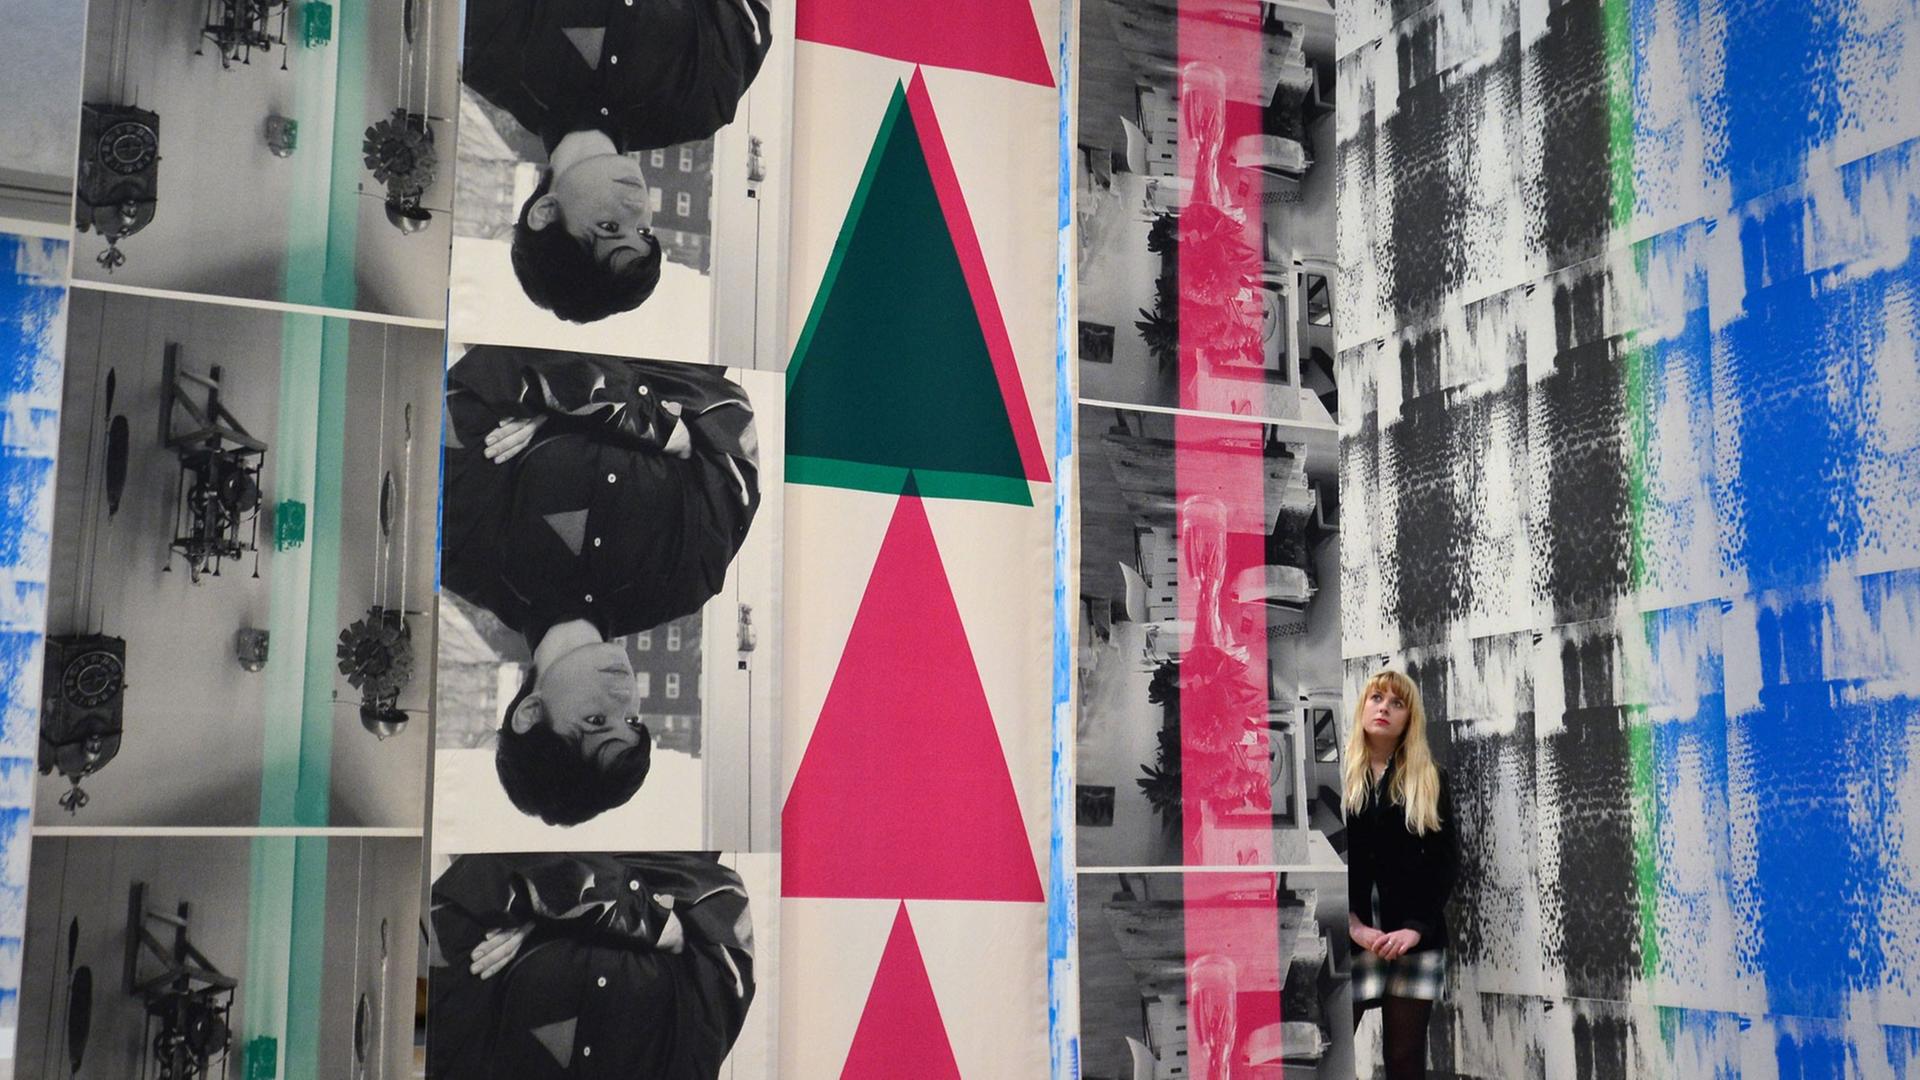 Turner Preis 2014: Ein Installation der nominierten Kanadierin Ciara Phillips in London. Rote und ein schwarzes Dreieck.